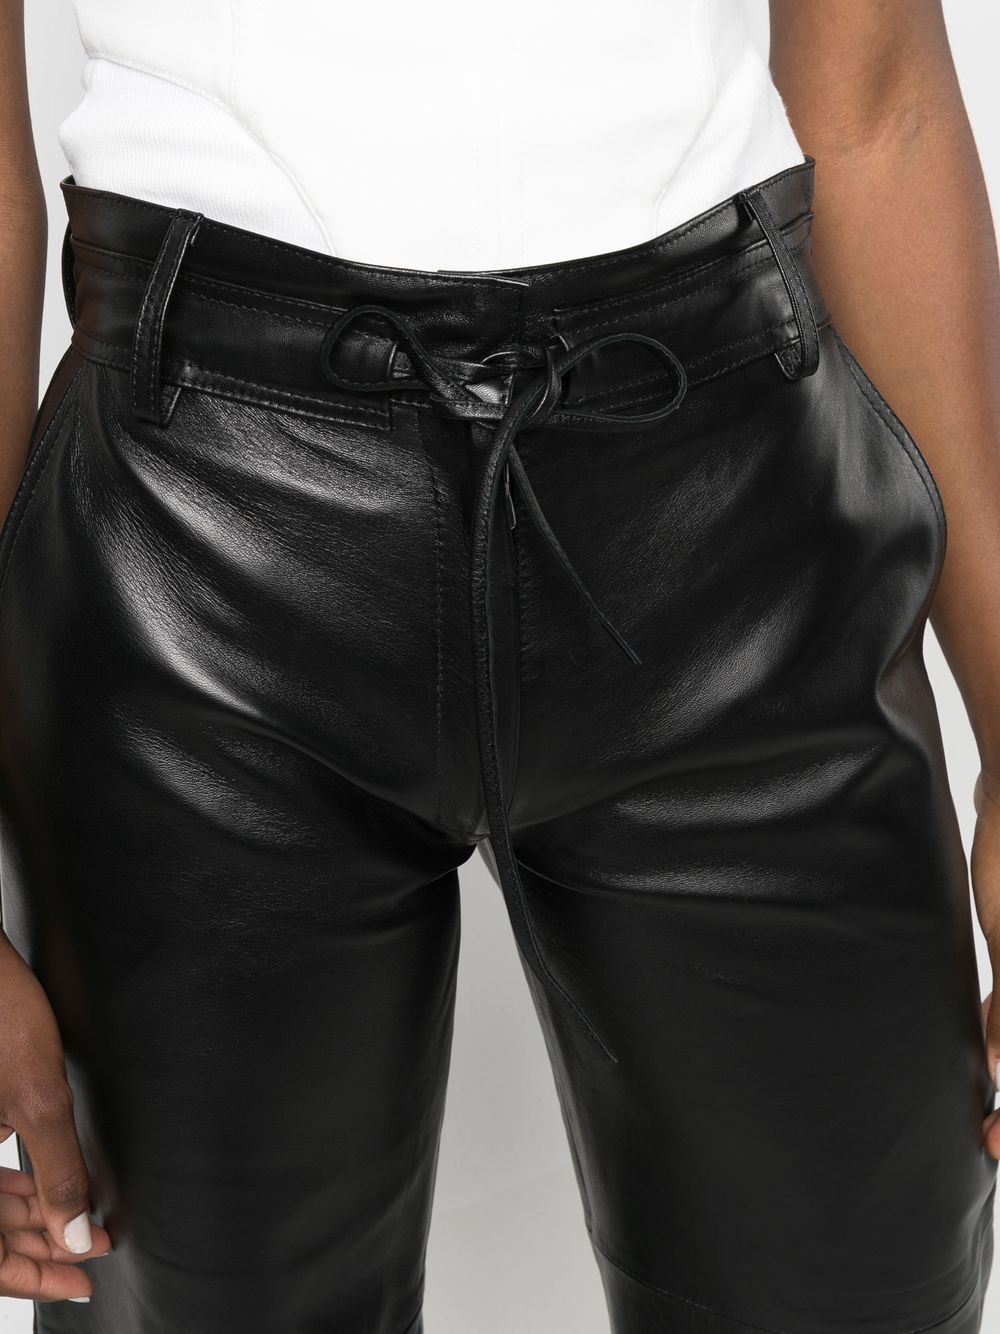 Manokhi Carla high-waisted Leather Pants - Farfetch